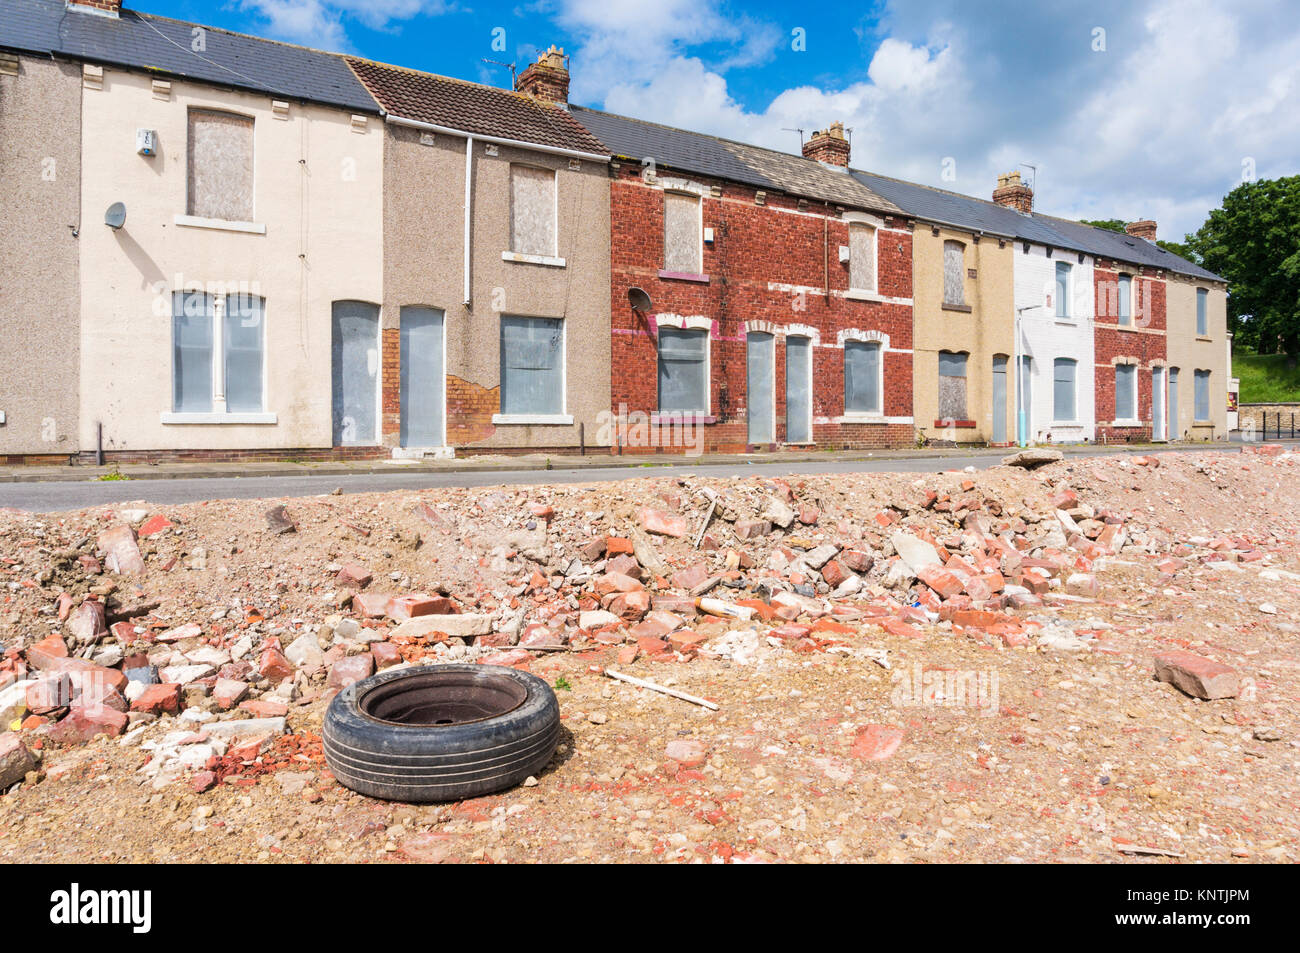 Heruntergekommene Reihenhäuser England Hartlepool, England verlassenen Häusern auf der Baustelle bereit für Abriss oder Sanierung Hartlepool Stockfoto